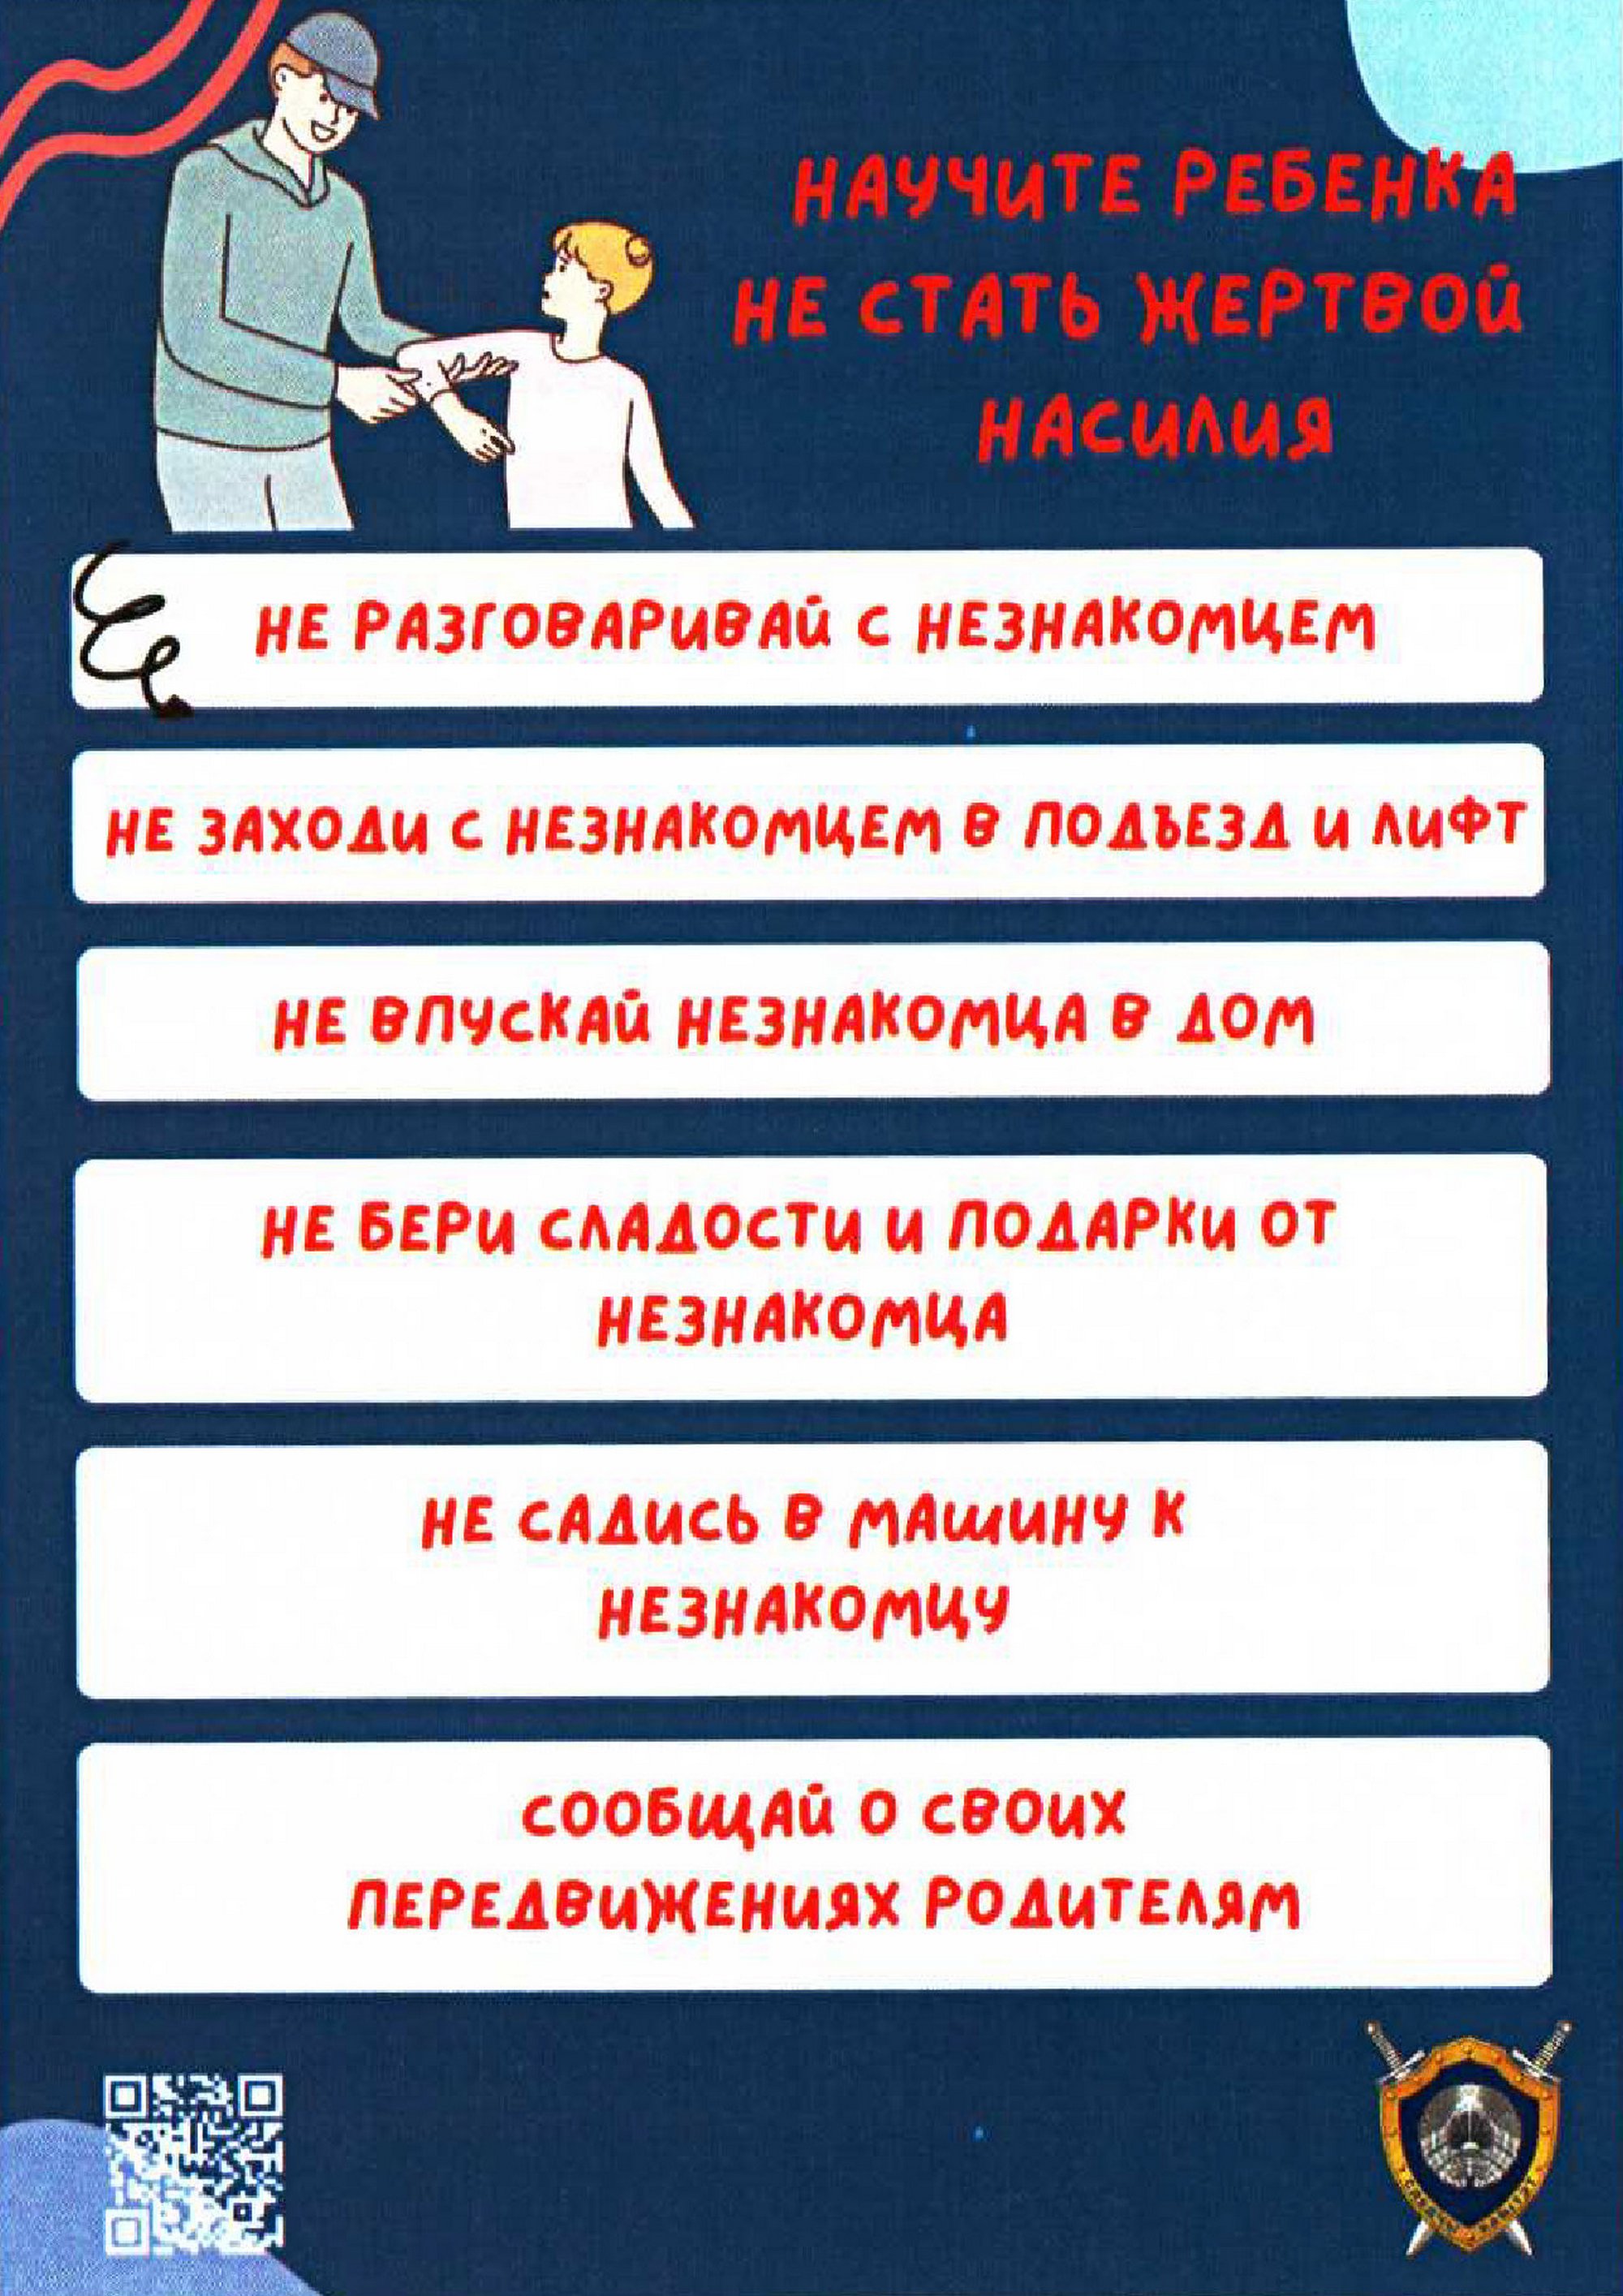 Листовка МВД Республики Беларусь